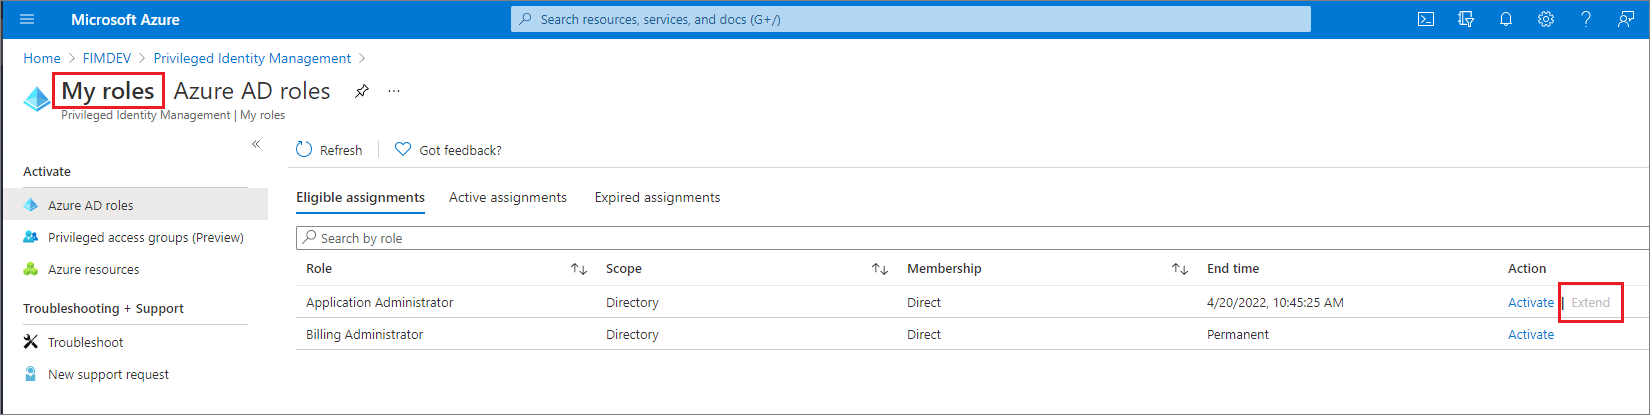 Funções do Microsoft Entra - Página Minhas funções listando funções qualificadas com uma coluna Ação.